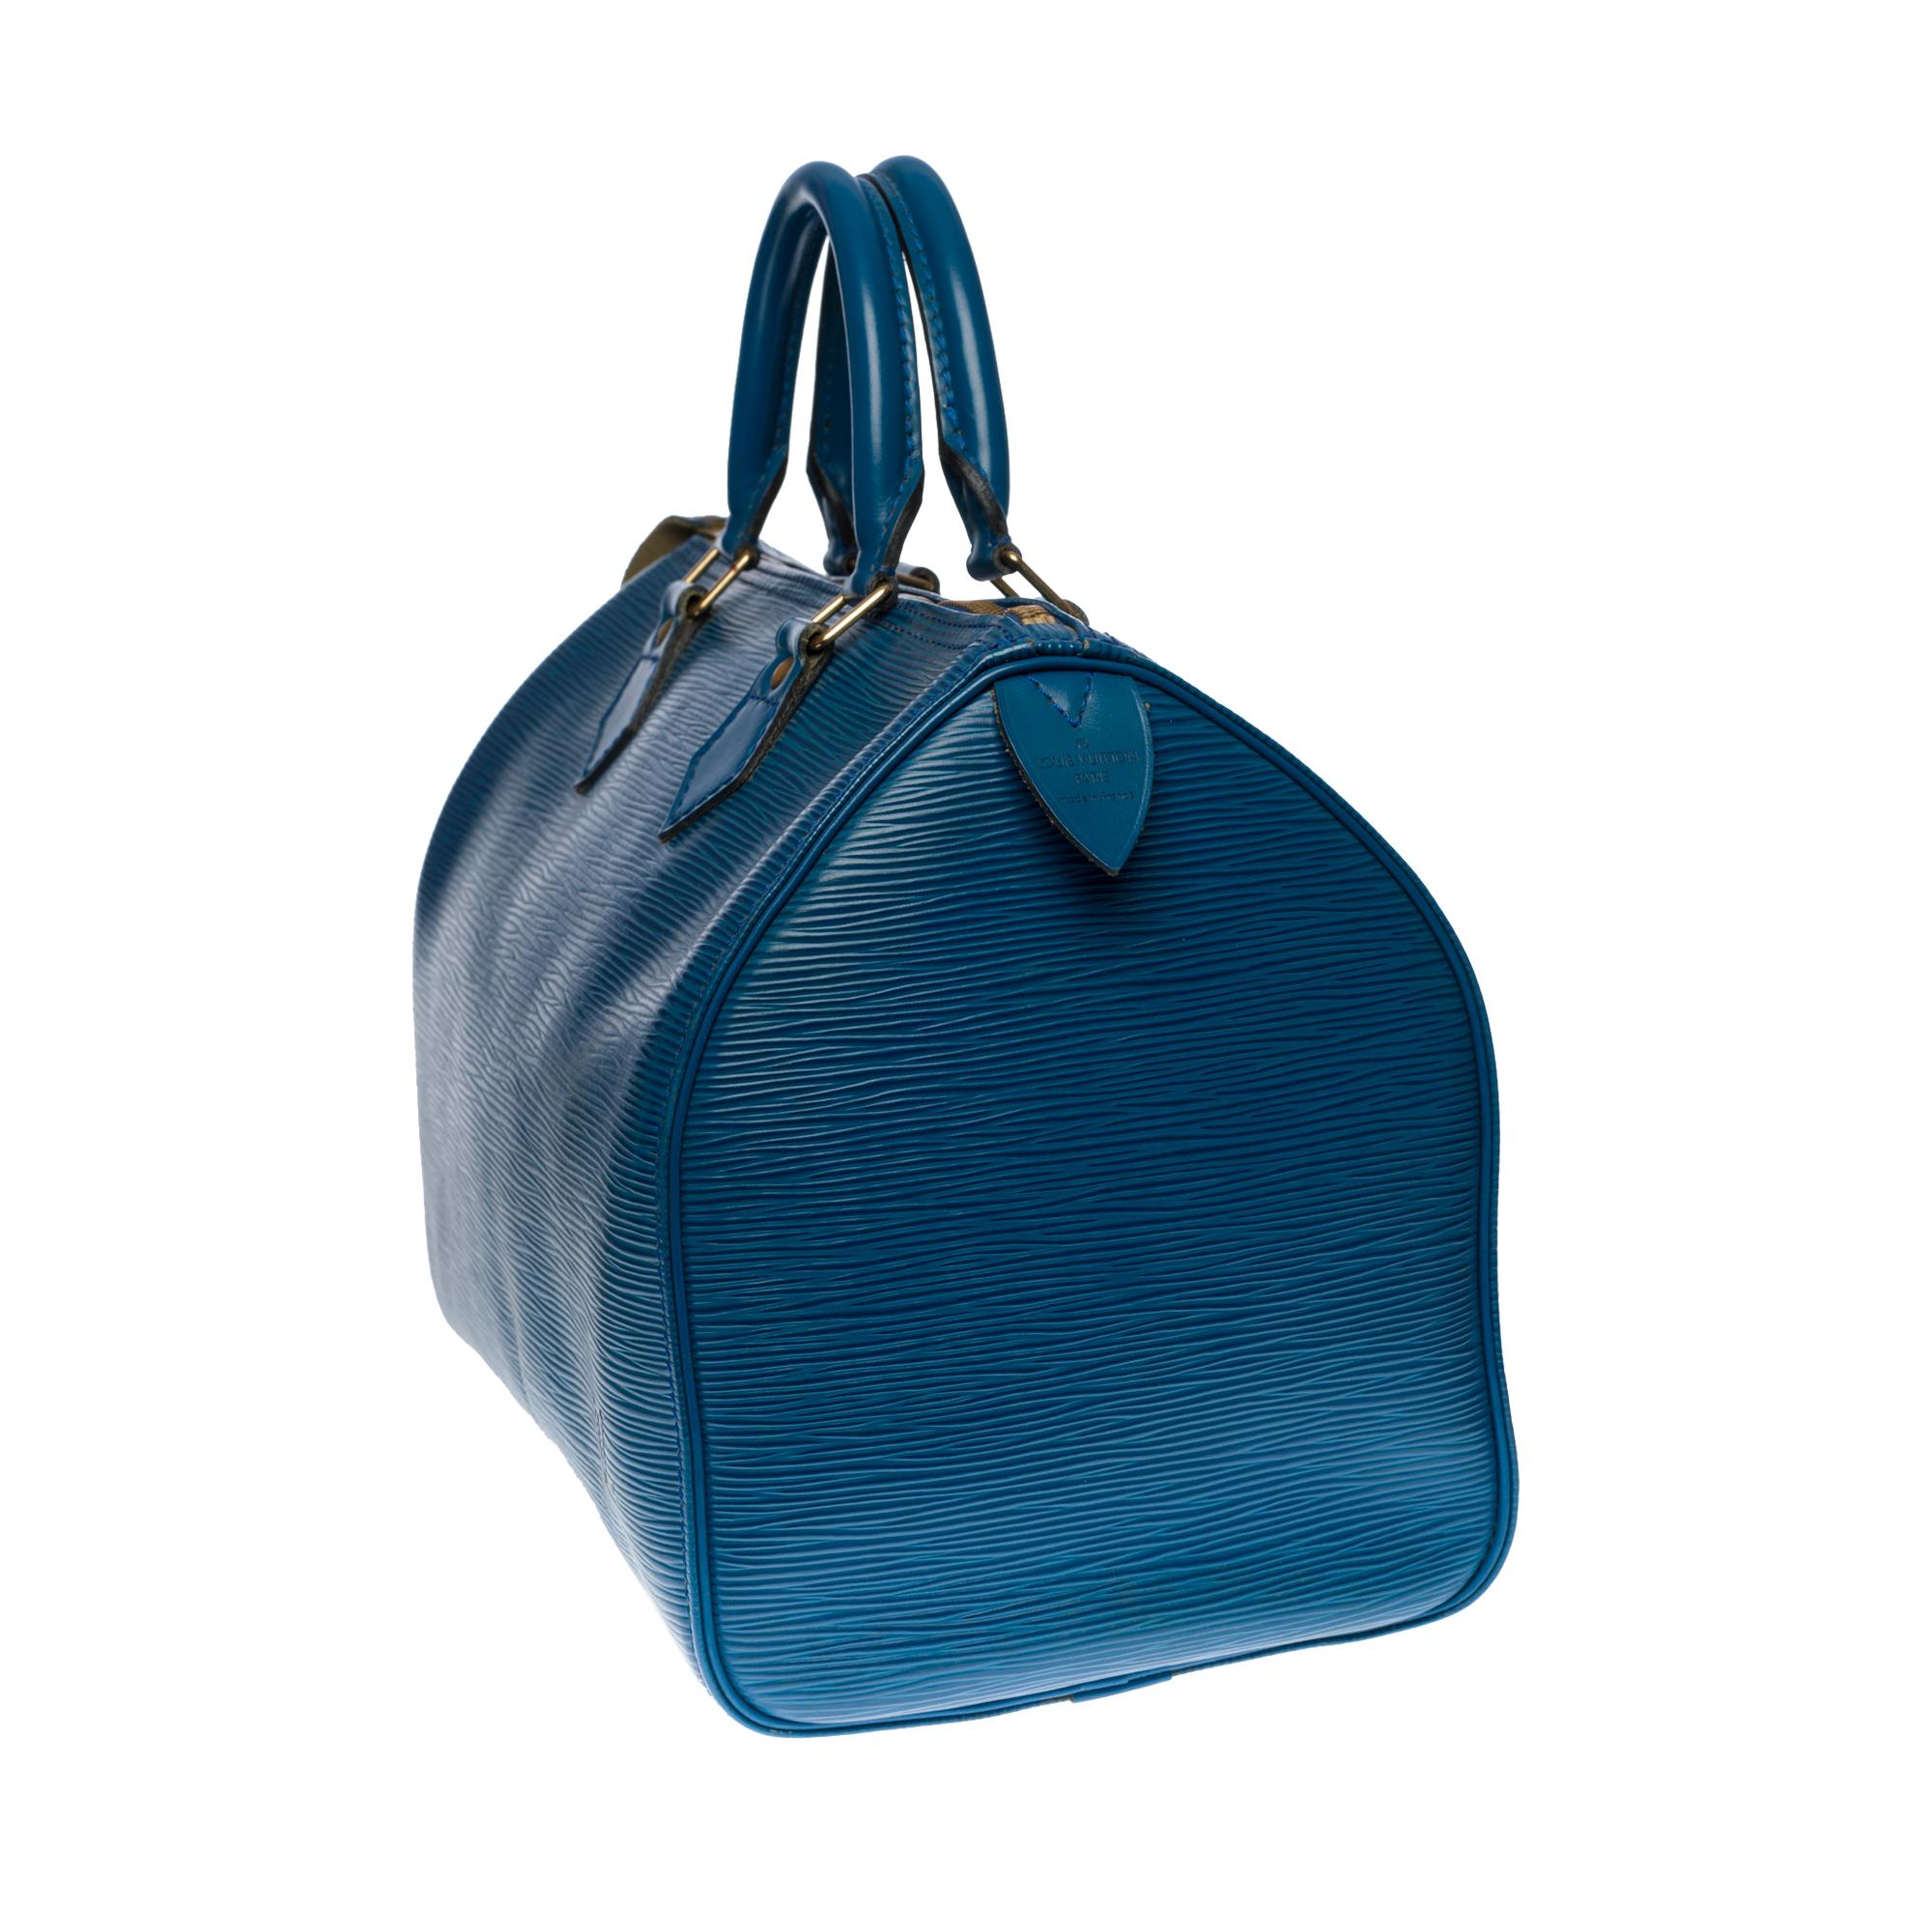 Louis Vuitton Speedy 30 Handtasche aus blauem kobaltfarbenem Pi-Leder und goldenen Beschlägen (Blau)